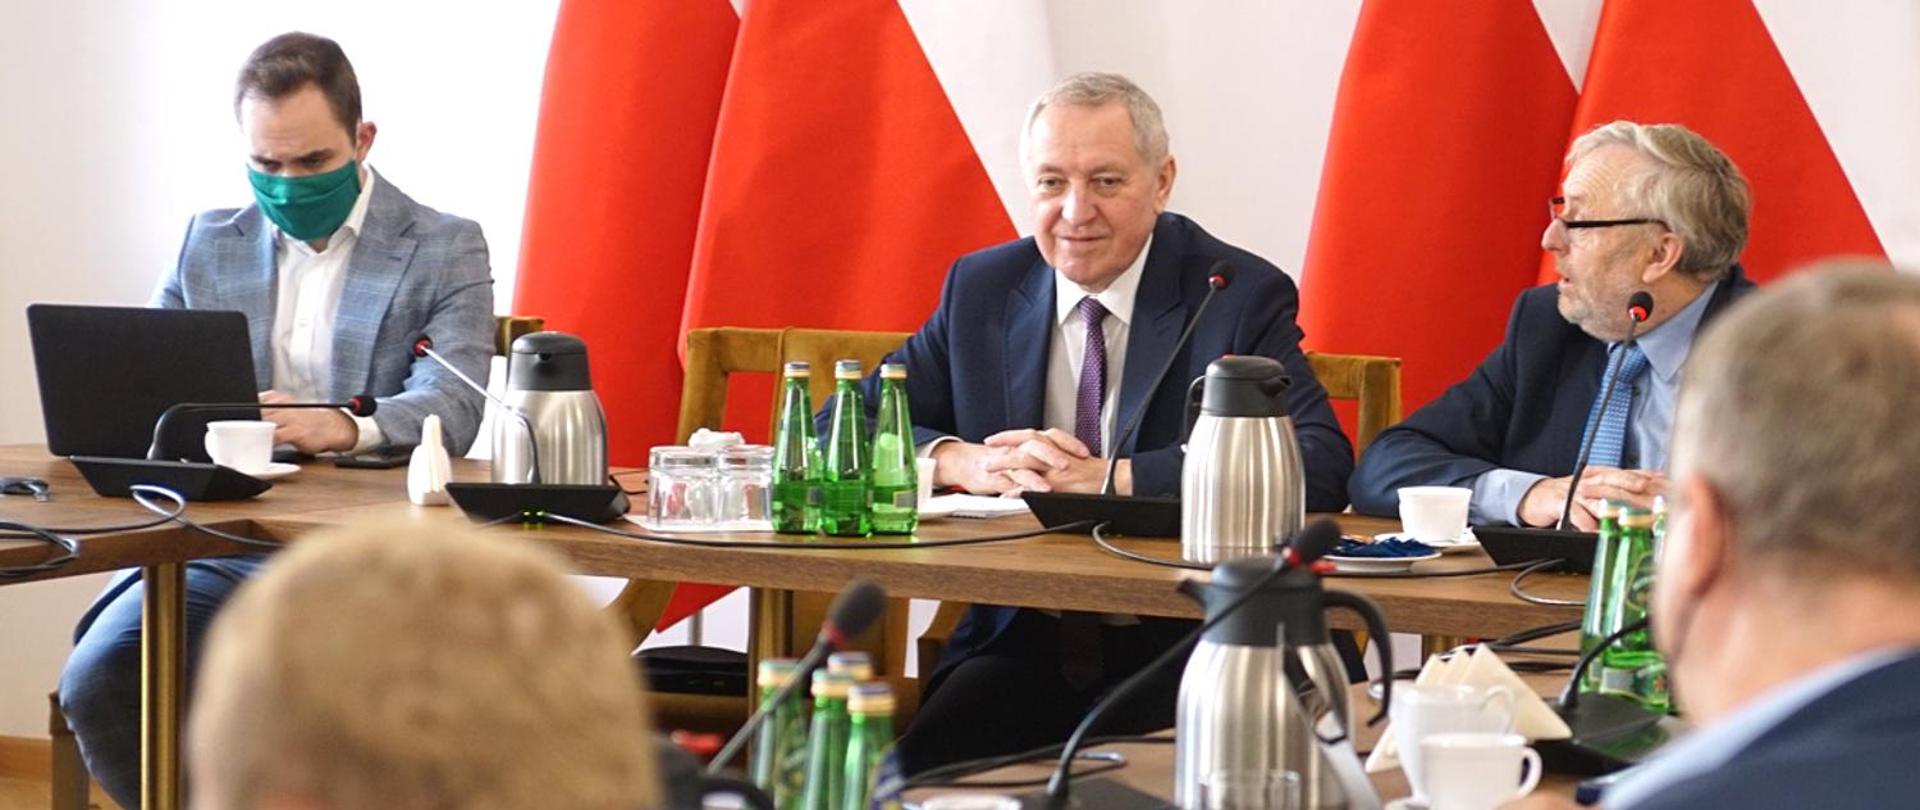 Wicepremier, ministra rolnictwa i rozwoju wsi Henryk Kowalczyk podczas spotkania, siedzący przy stole na tle biało-czerwonych flag